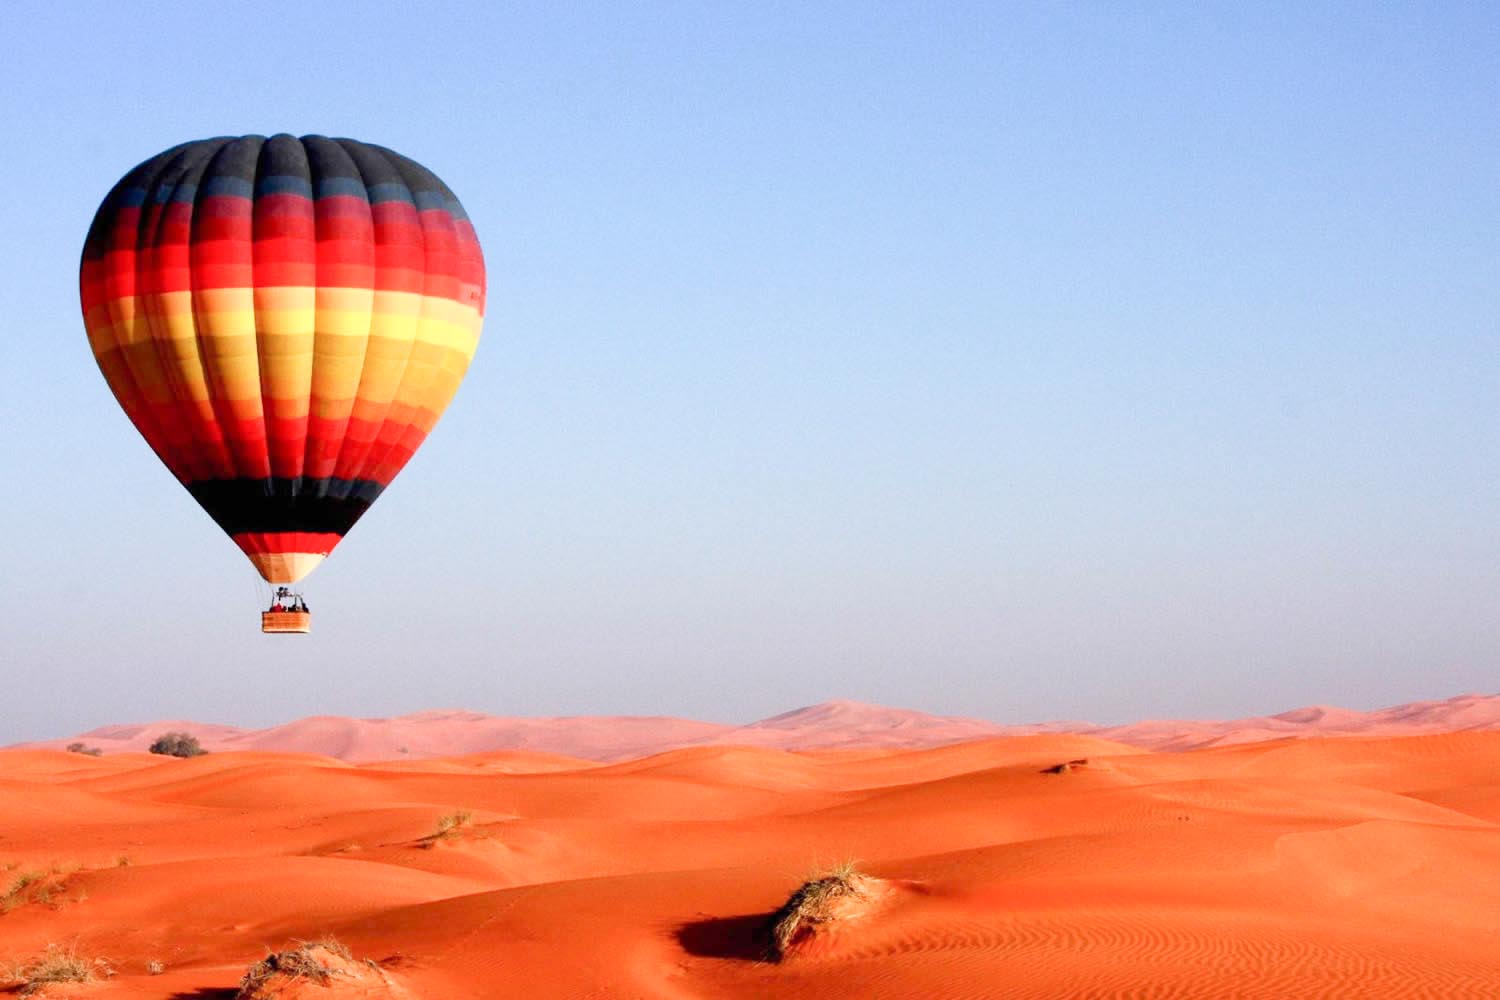 Morocco hot air balloon flight tour in Marrakech to explore the Atlas Mountains